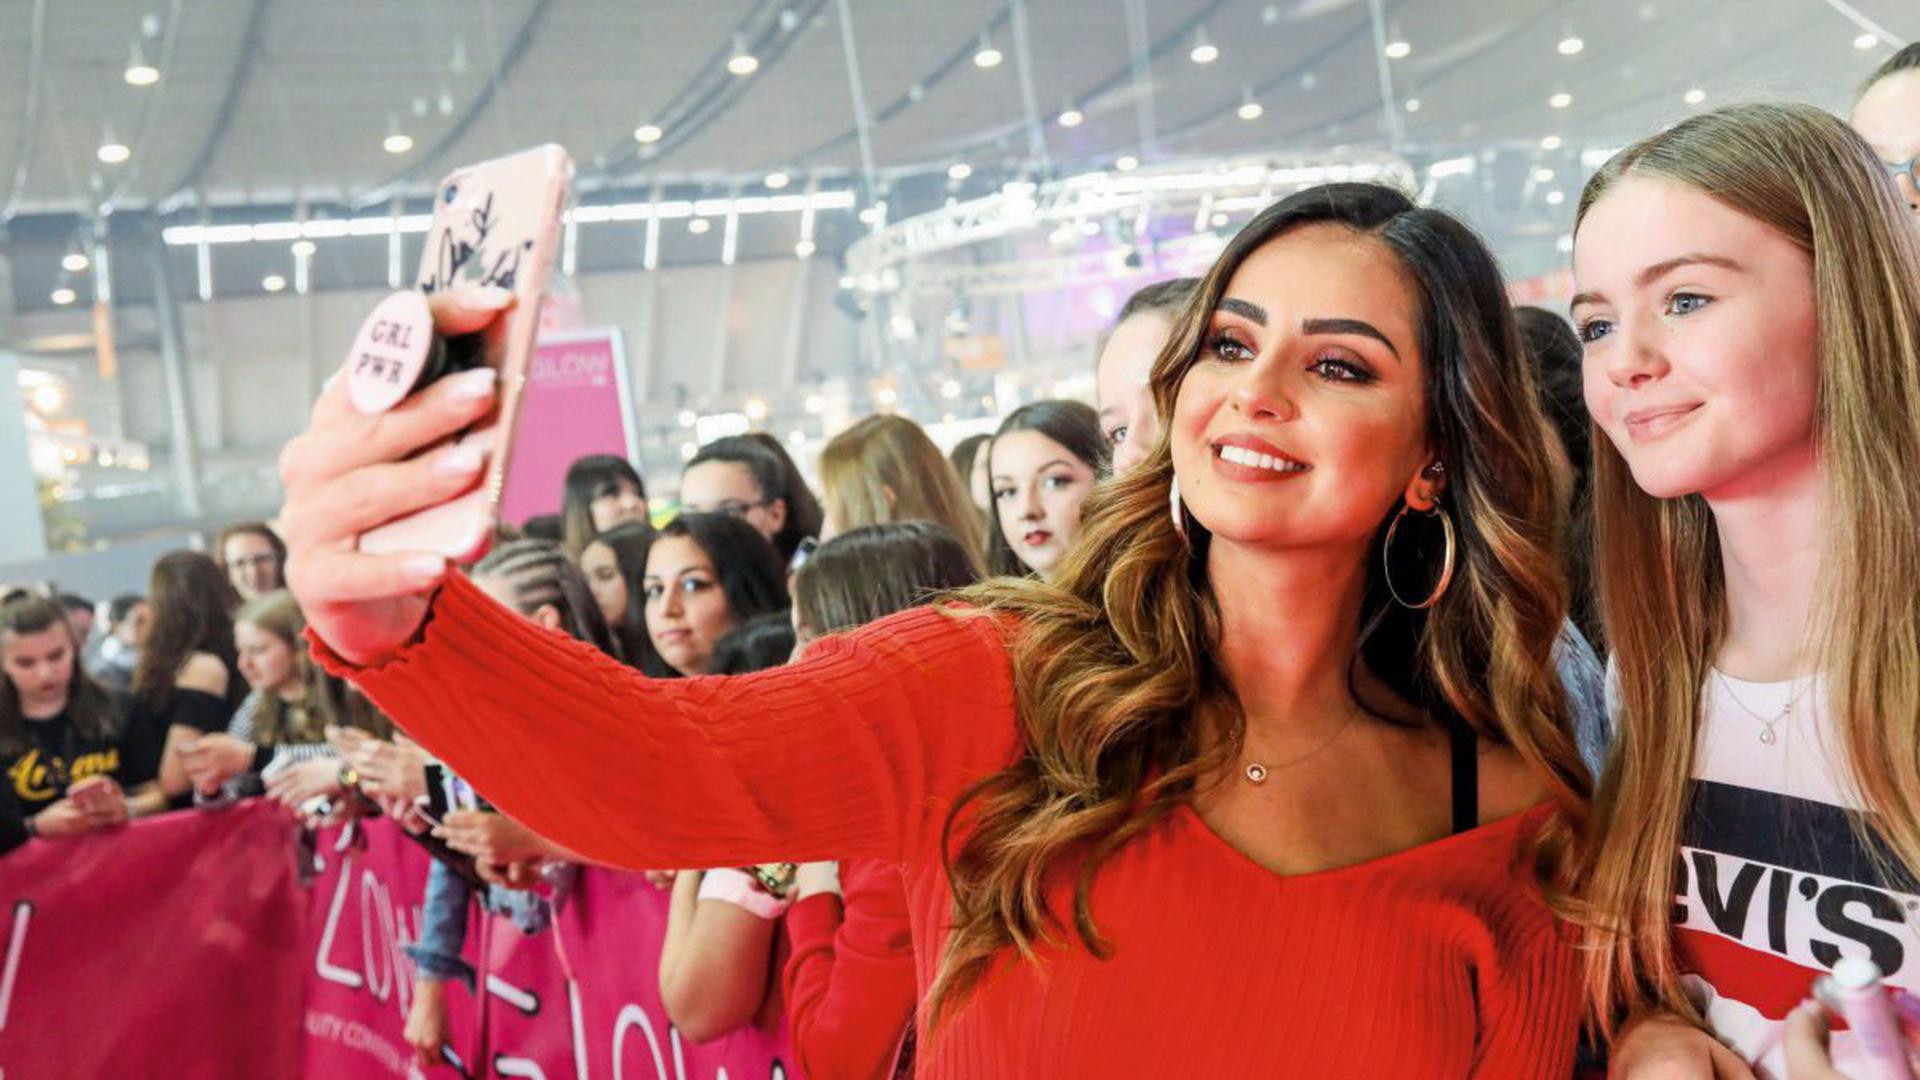 Instagram-Stars posieren mit ihren meist jungen Fans für Fotos. Dass sie auch als Werbeträger fungieren, sehen manche Menschen kritisch.